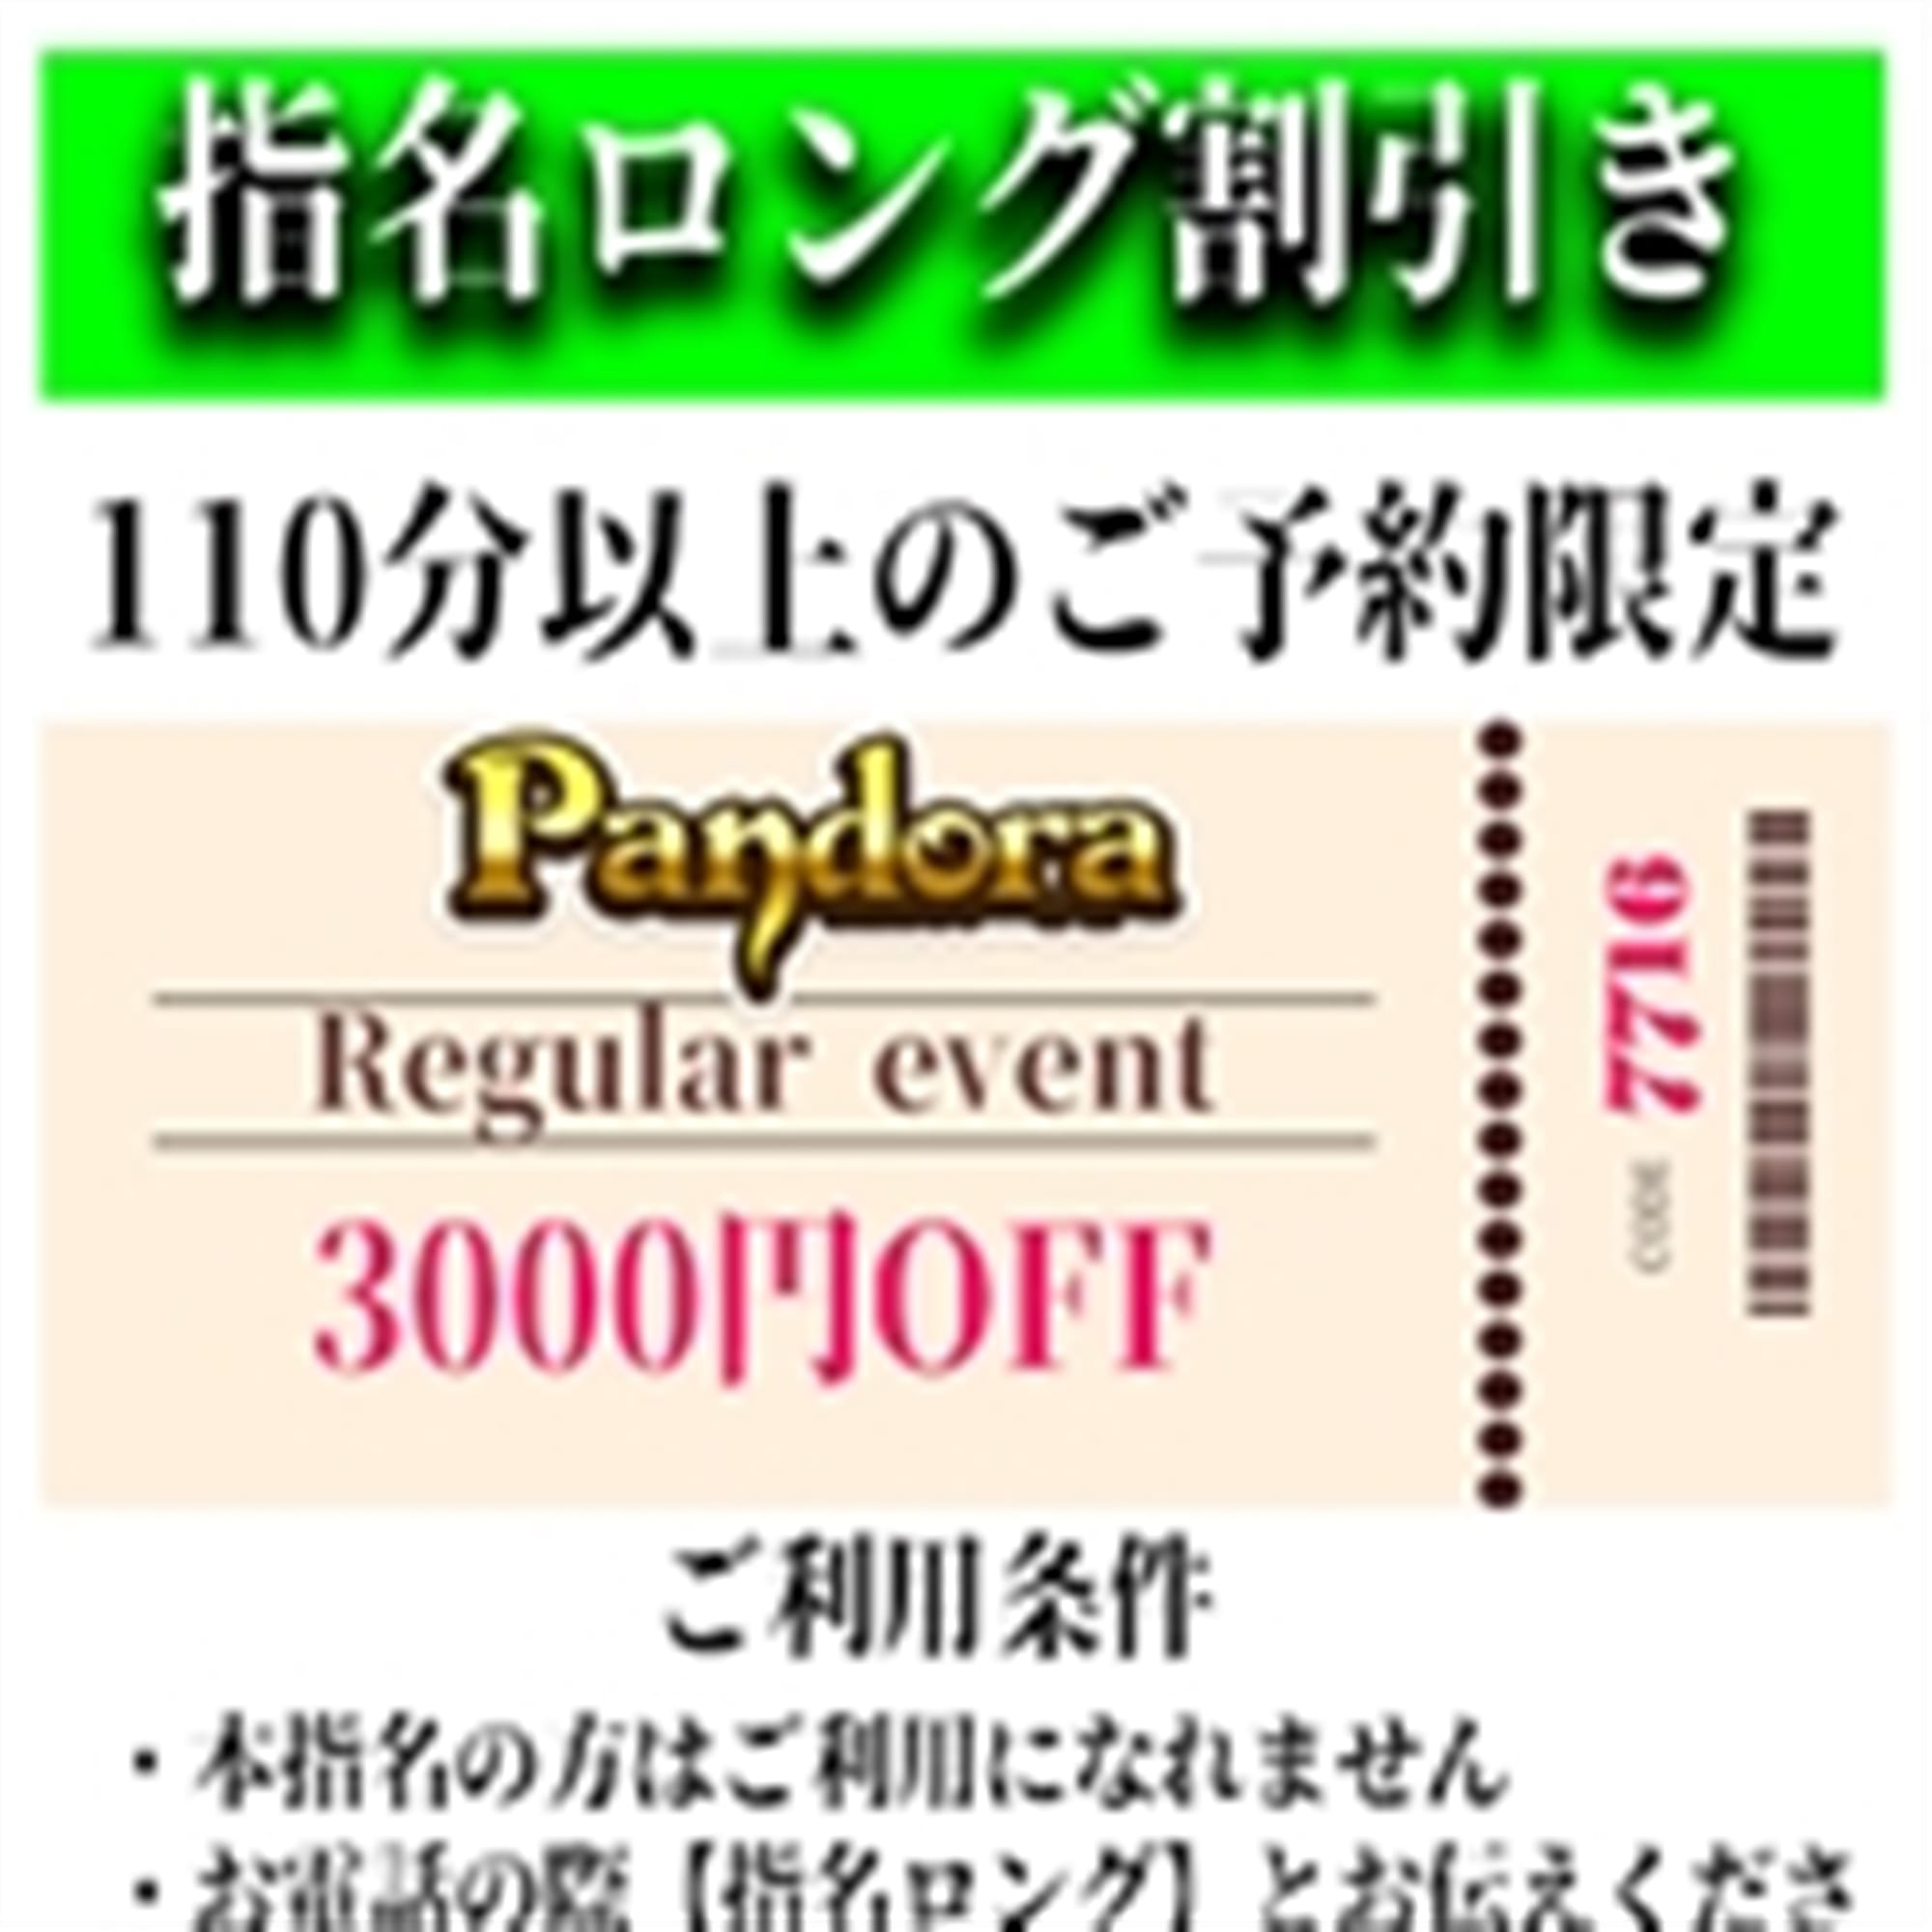 「ご指名のお客様も遊べるロングコース割引」03/29(金) 20:48 | Pandora(パンドラ)新潟のお得なニュース